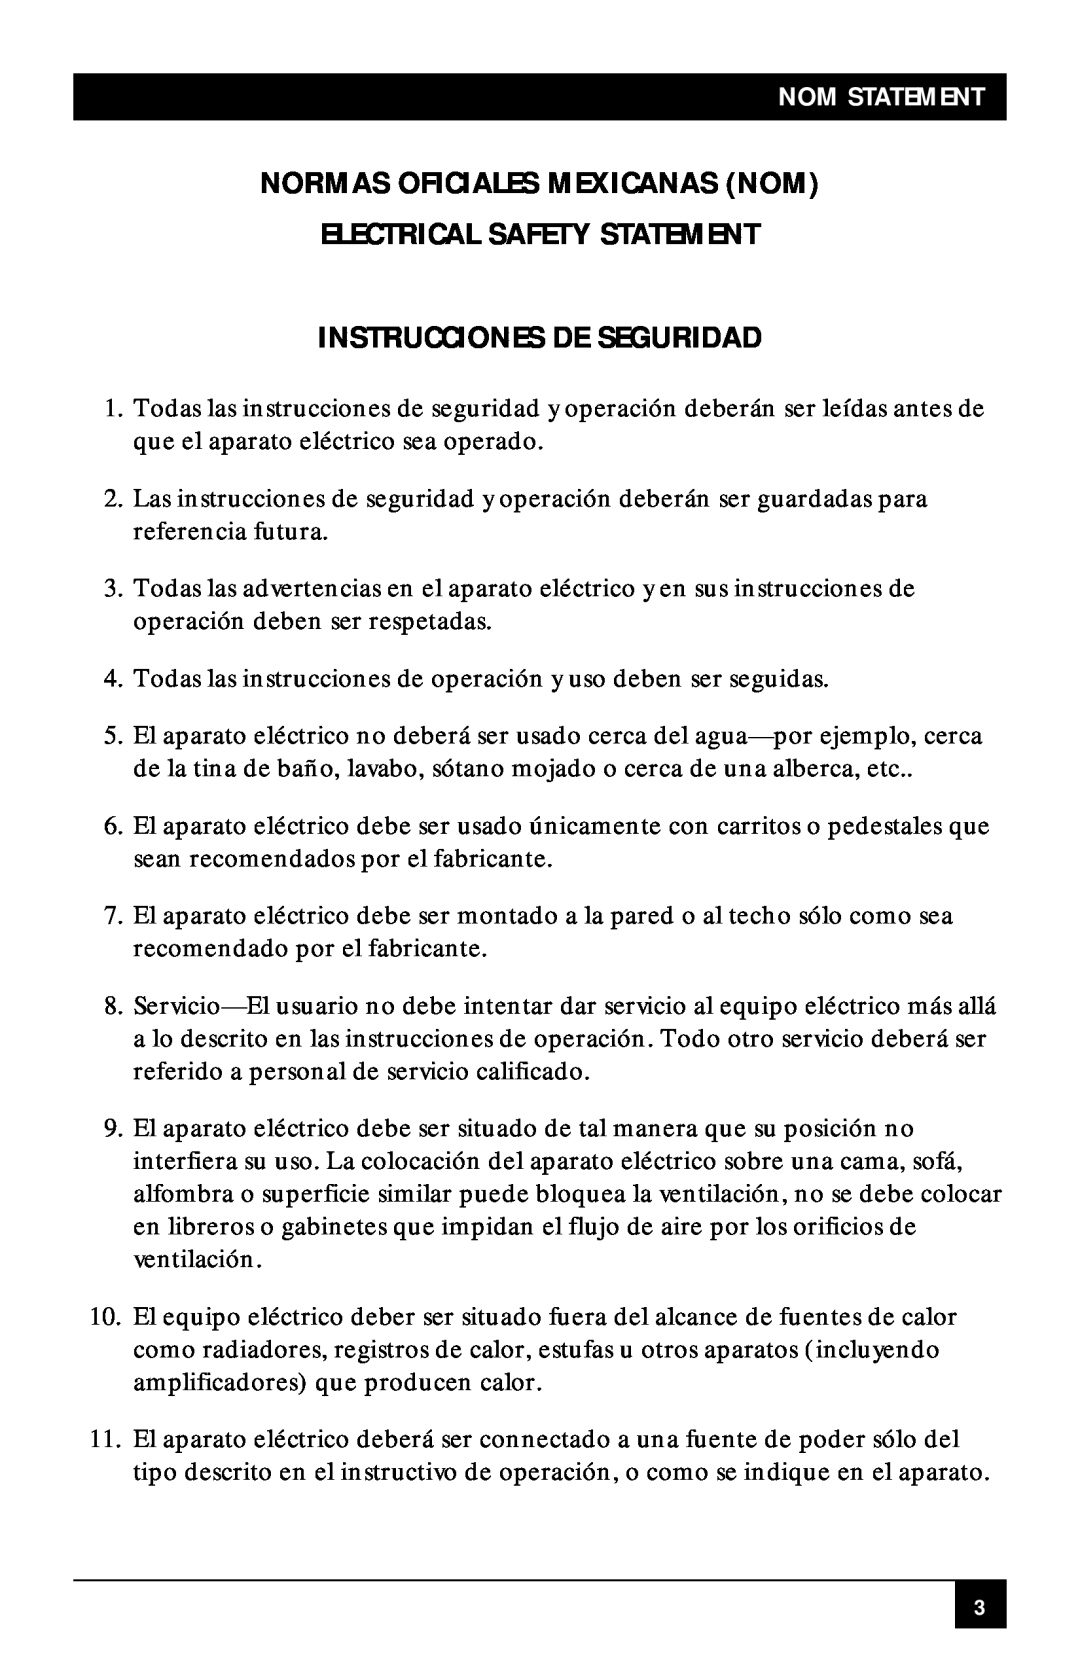 Black Box RS-232/422/485 manual Normas Oficiales Mexicanas Nom, Electrical Safety Statement, Instrucciones De Seguridad 